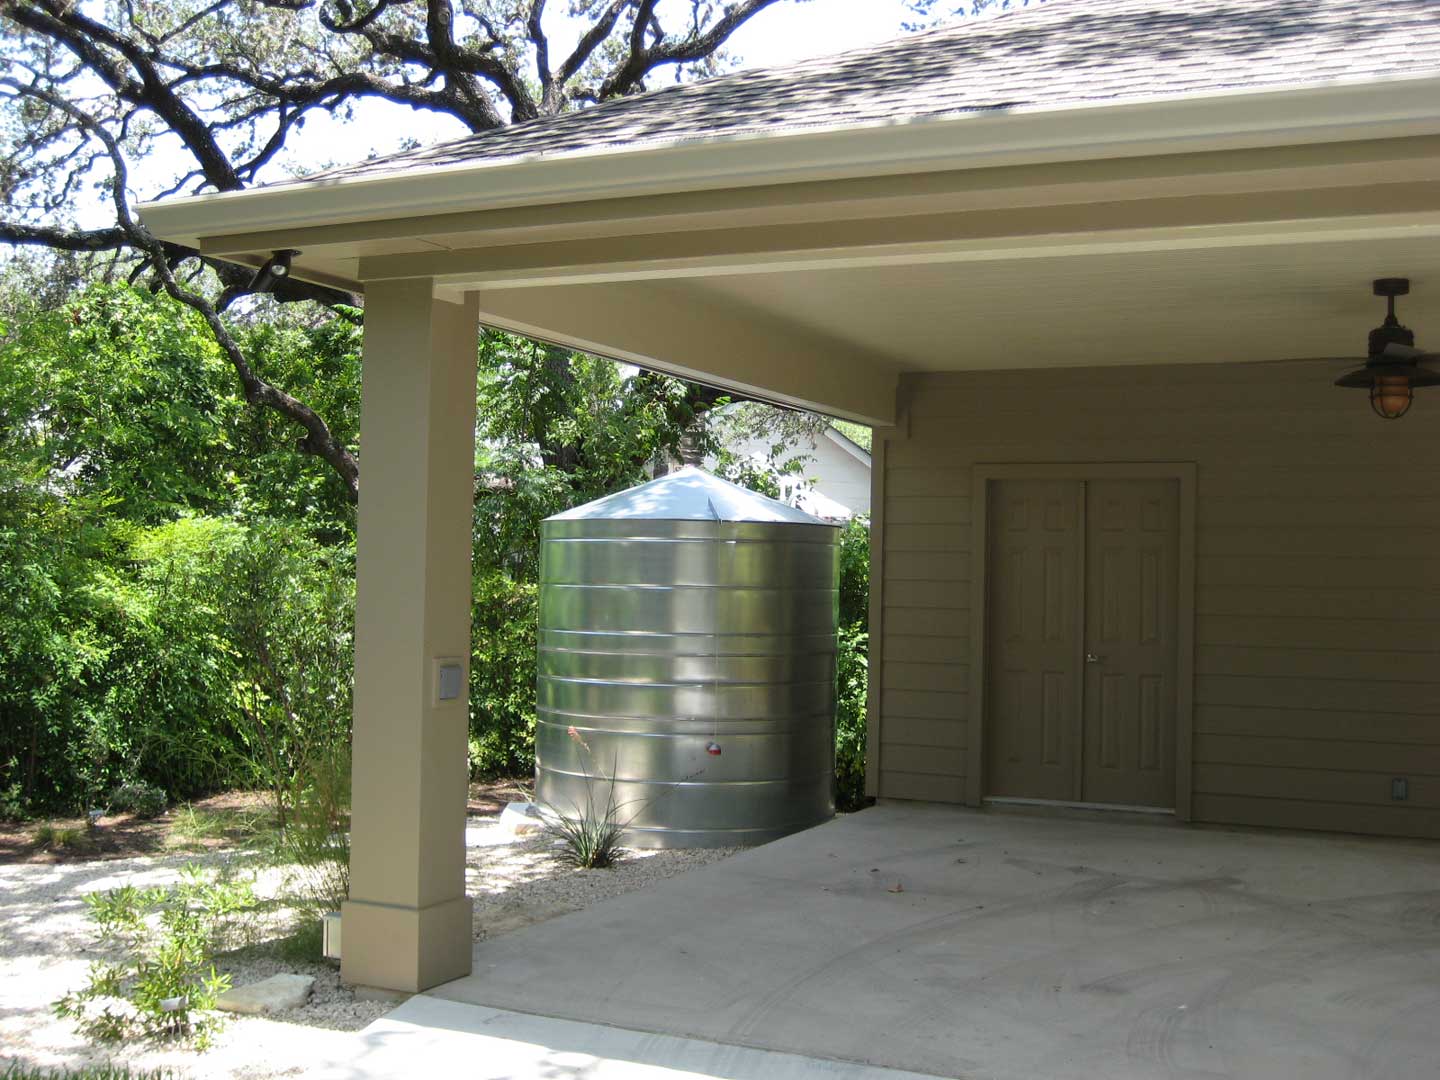 galvanized metal cistern by garage